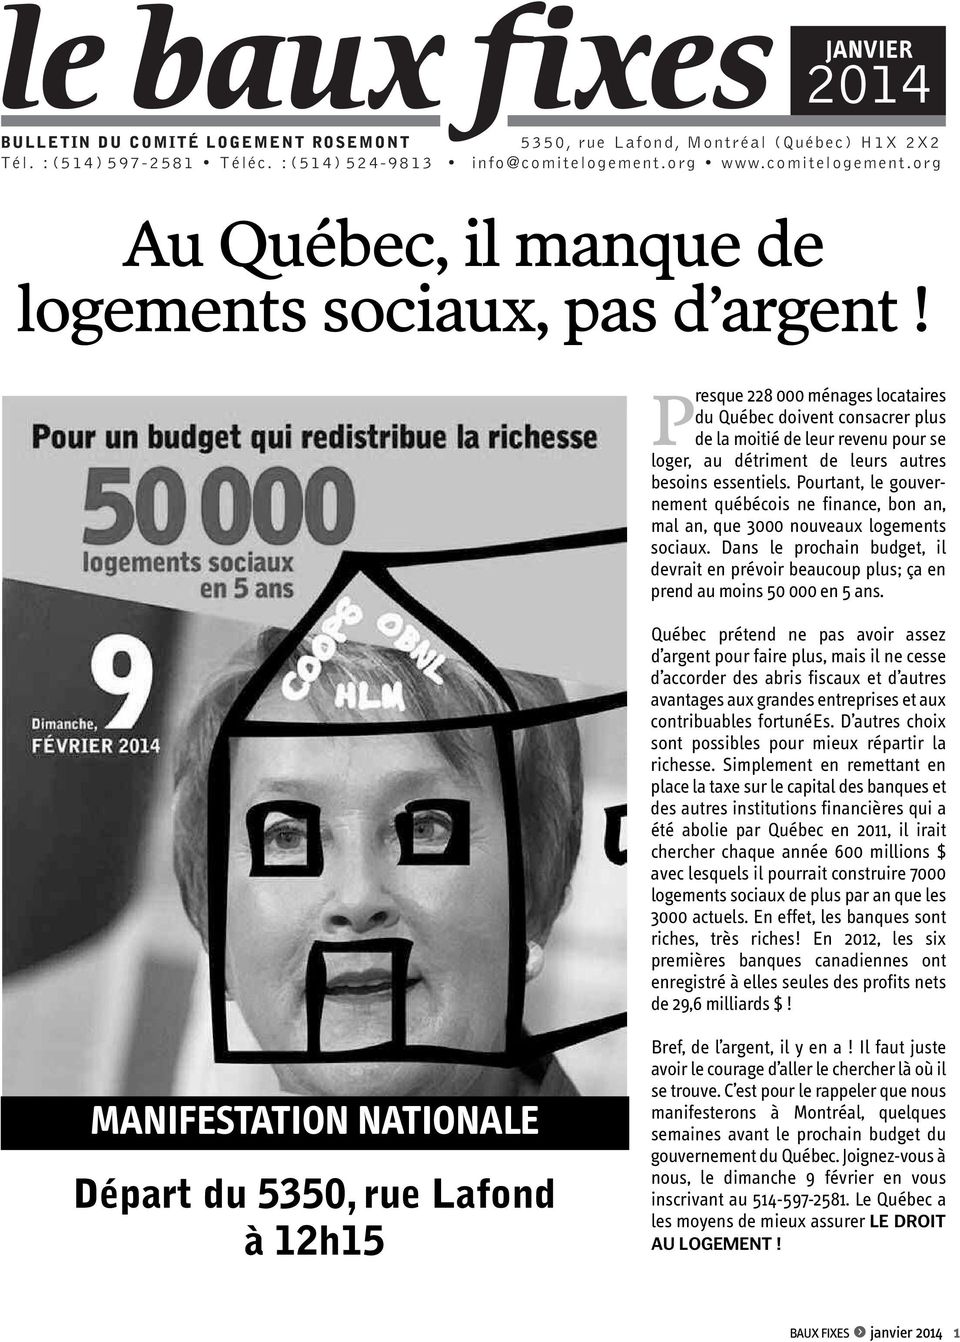 P resque 228 000 ménages locataires du Québec doivent consacrer plus de la moitié de leur revenu pour se loger, au détriment de leurs autres besoins essentiels.